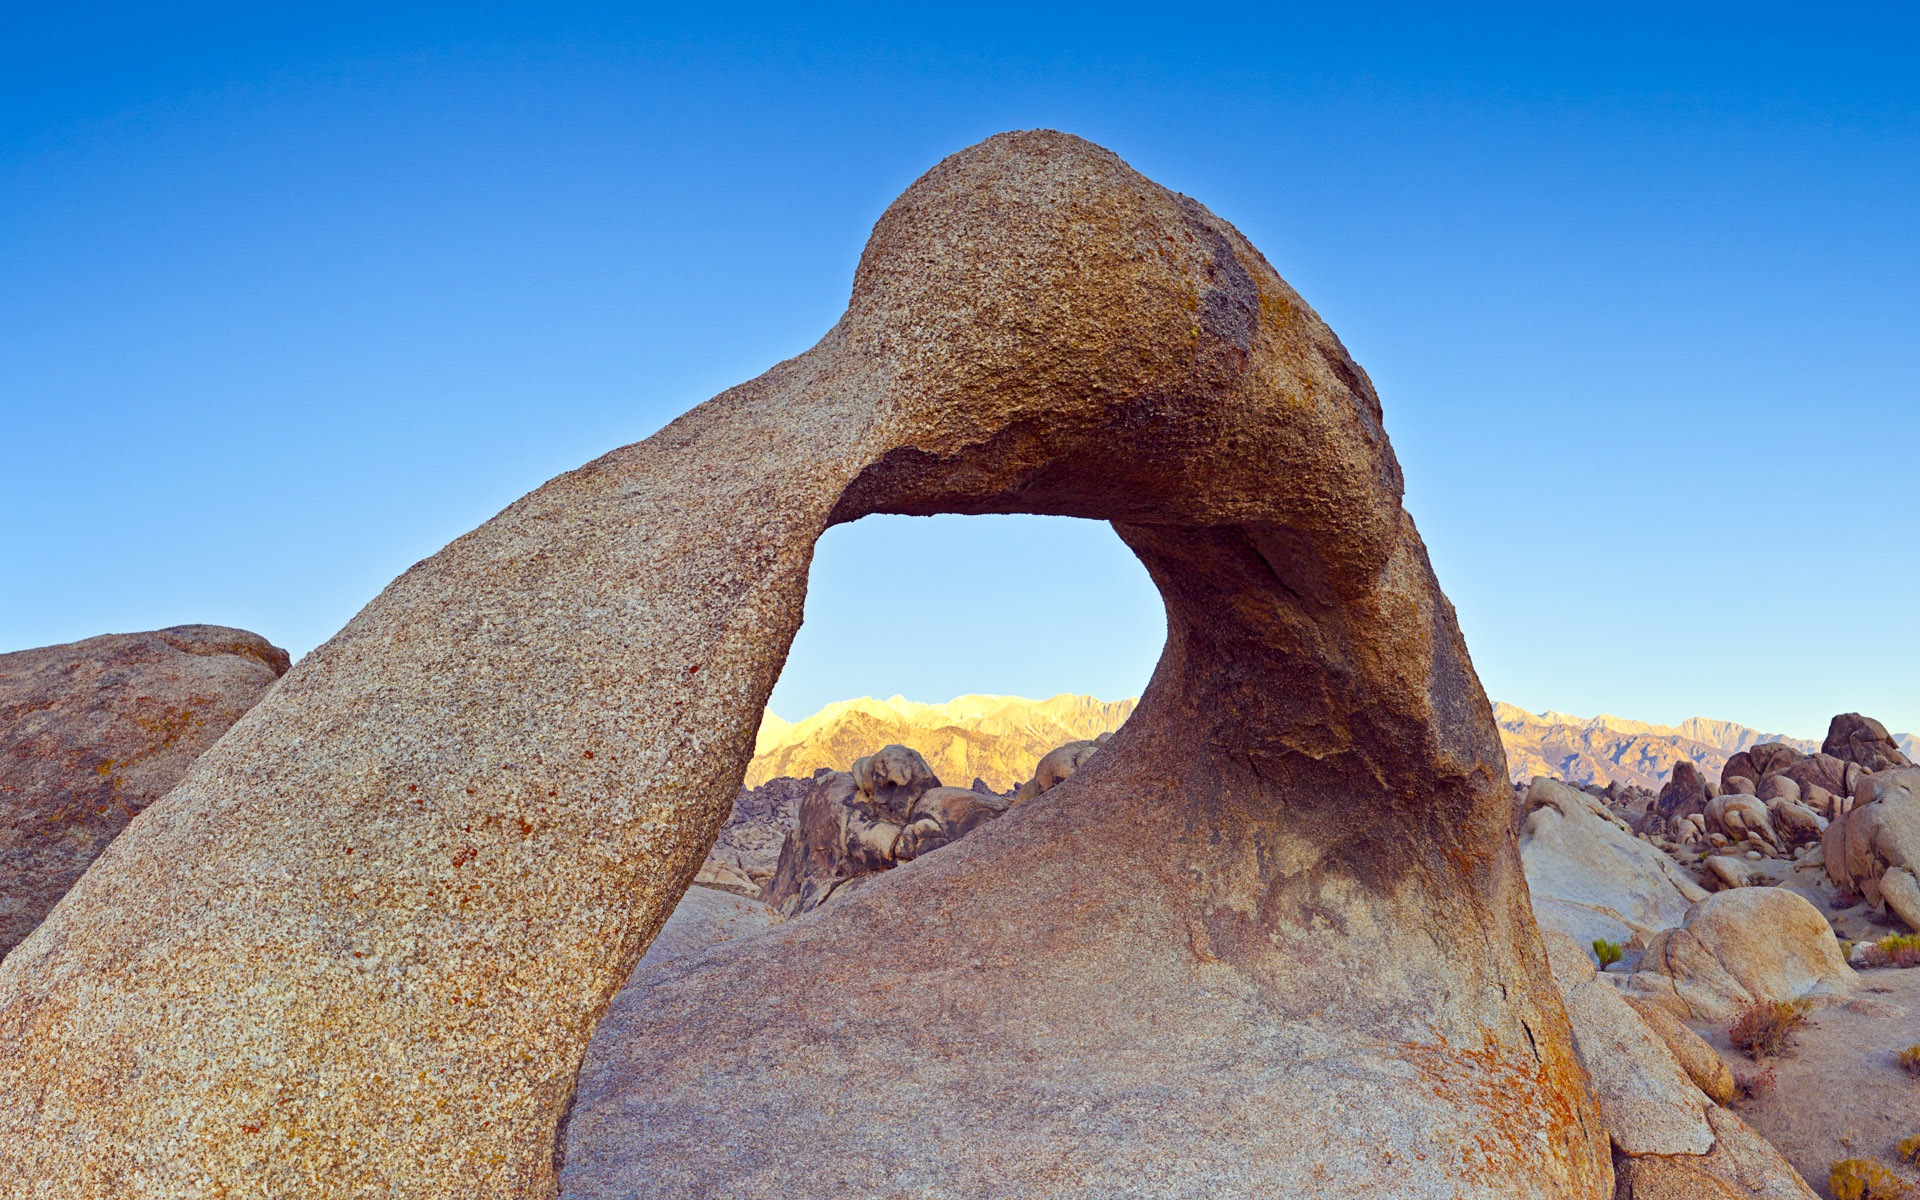 Les déserts chauds et arides, de Windows 8 fonds d'écran widescreen panoramique #5 - 1920x1200